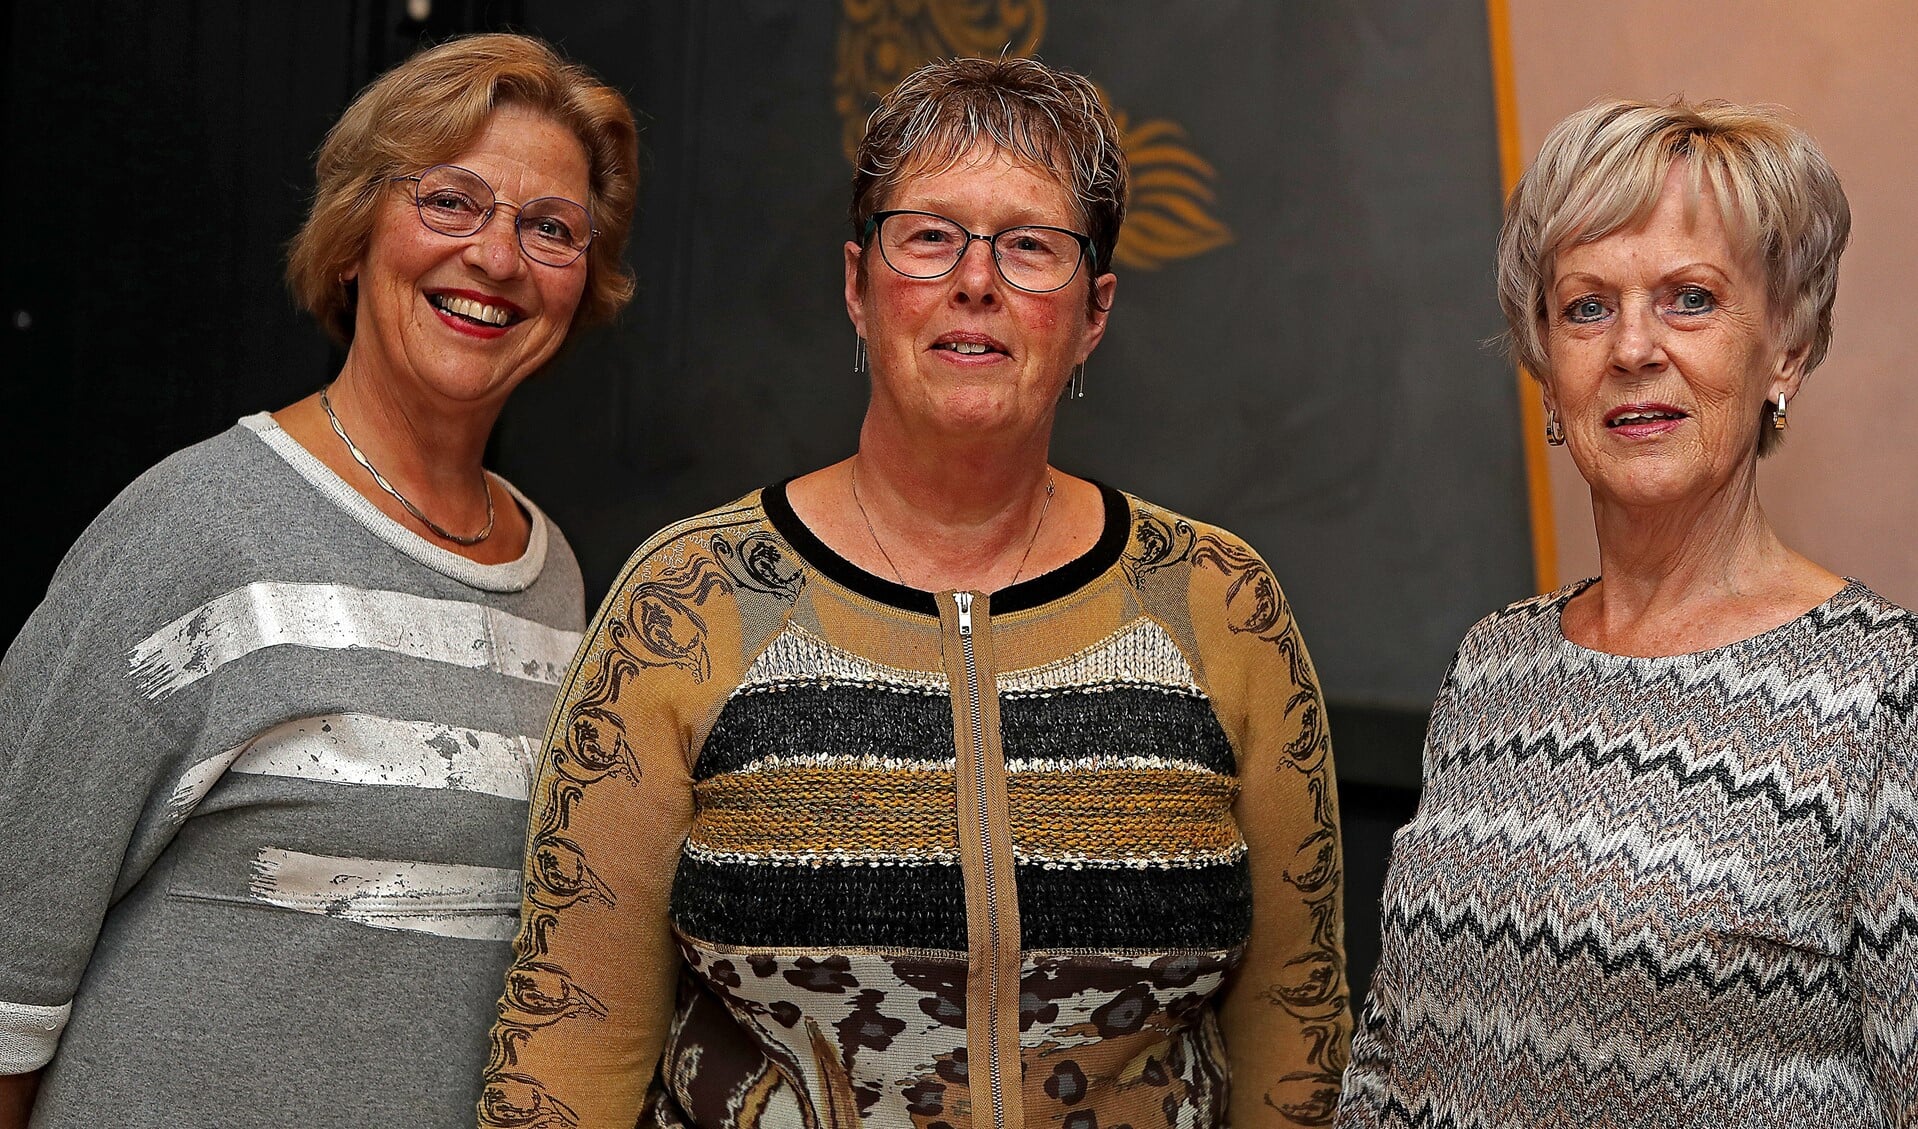 Het bestuur van het koor Van Eigen Bodem, van links naar rechts: Ina Schut, Anita Stierp en Ria van der Waard.